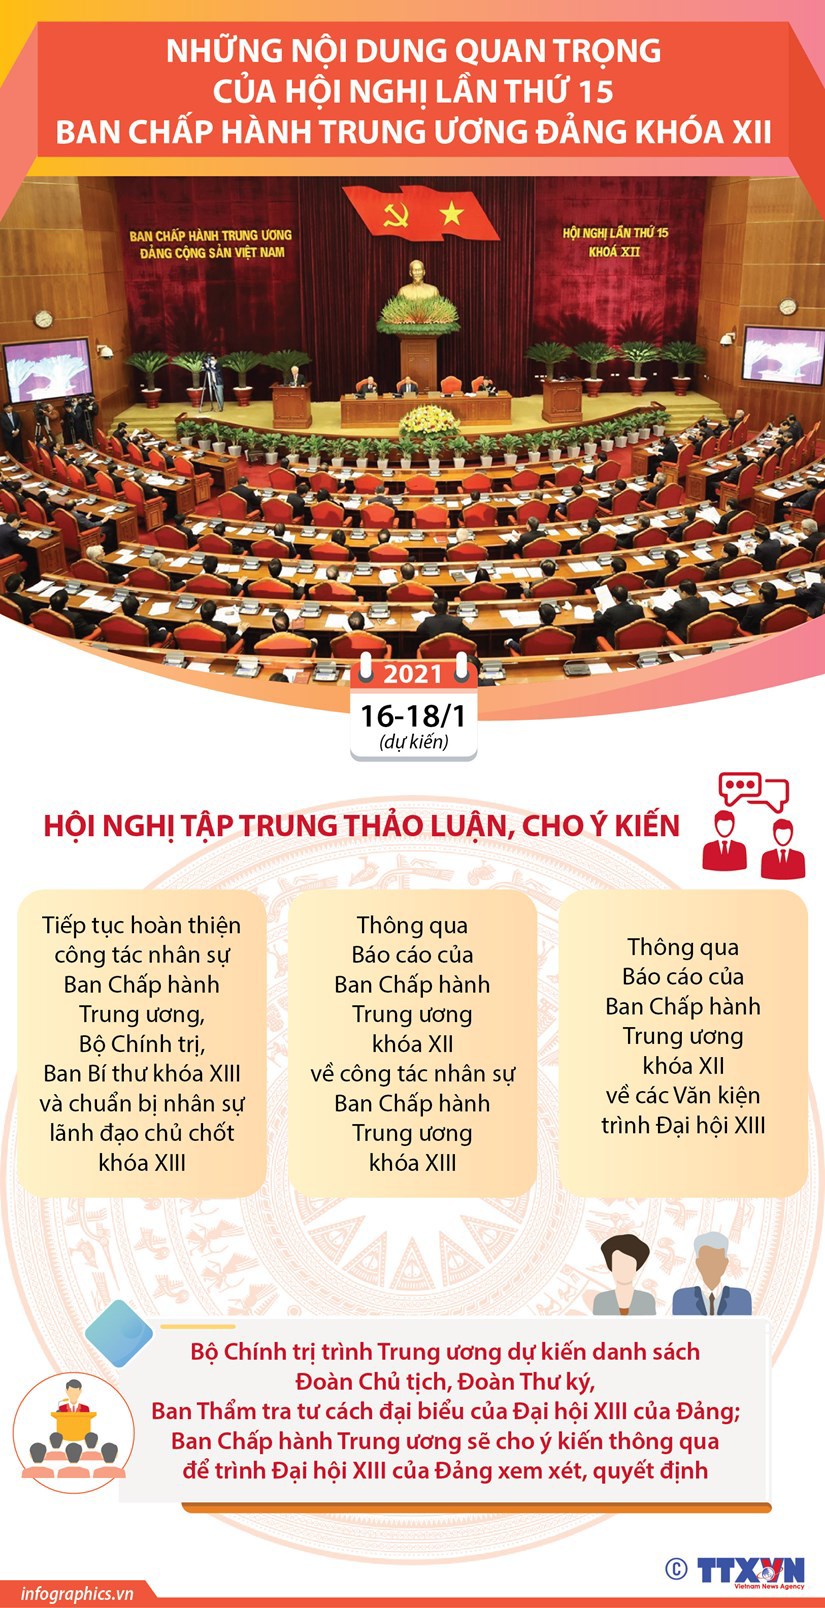 [Infographic] Những nội dung quan trọng của Hội nghị lần thứ 15 Ban Chấp hành Trung ương Đảng - Ảnh 1